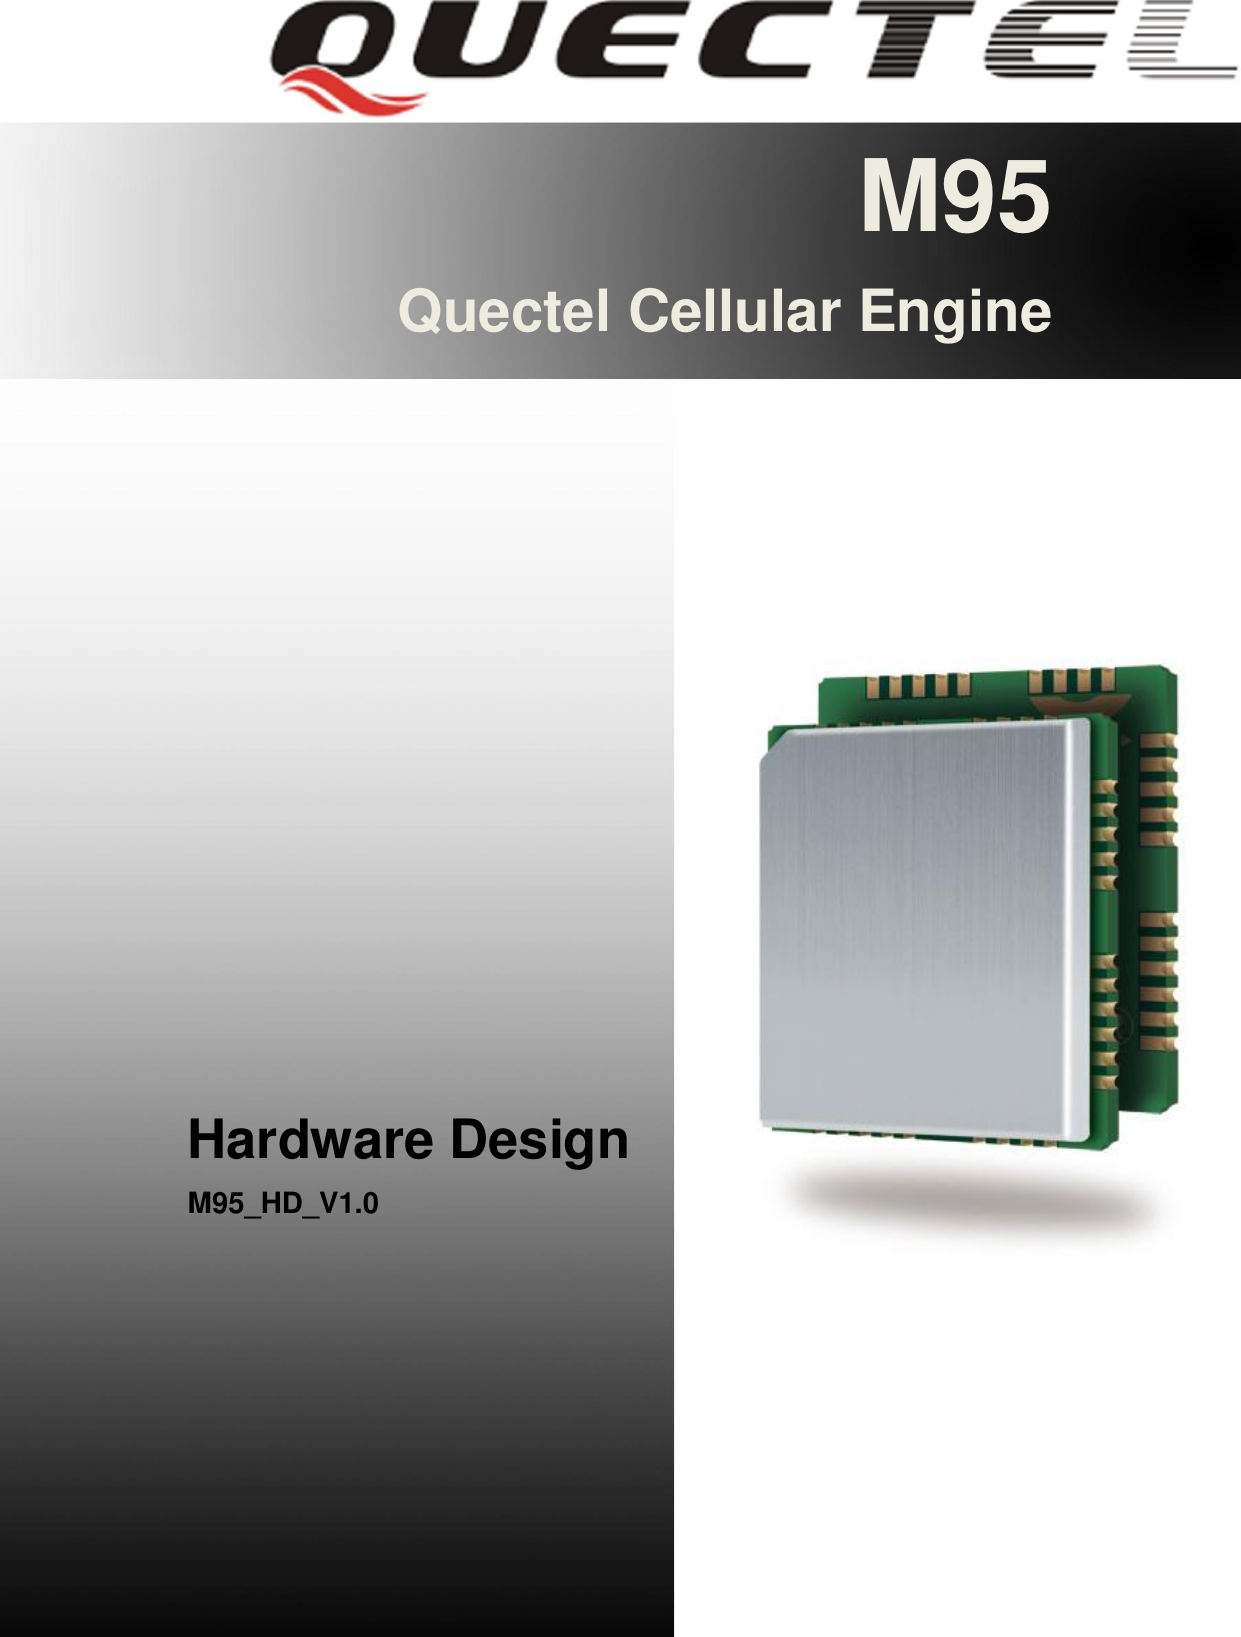 M95 Hardware Design                                               M95_HD_V1.0                                                                - 1 -       M95 Quectel Cellular Engine                   Hardware Design M95_HD_V1.0        